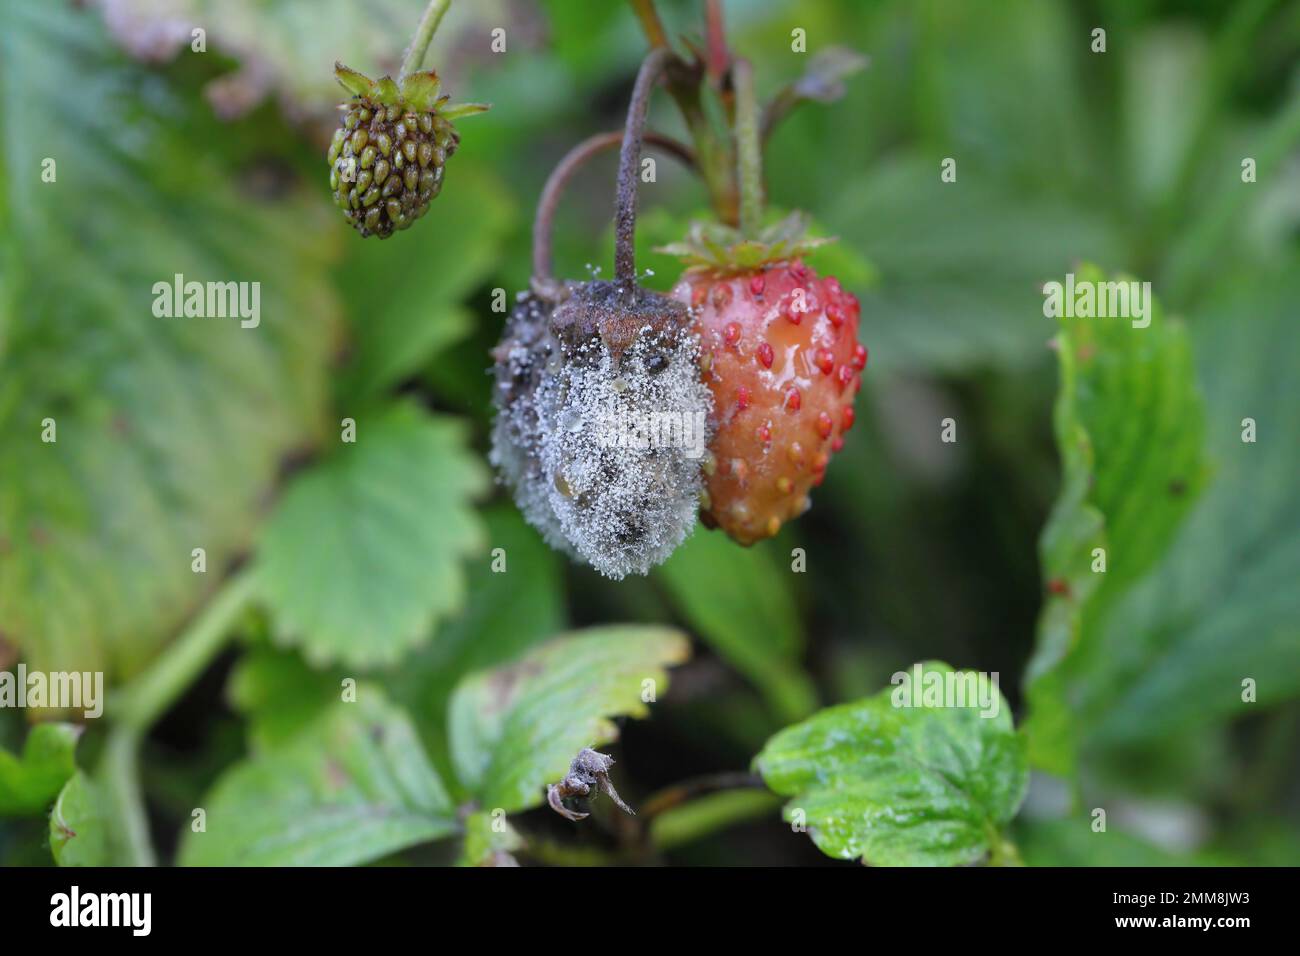 Moule gris (Botrytis cinerea) pourriture des fruits à la fraise. Banque D'Images